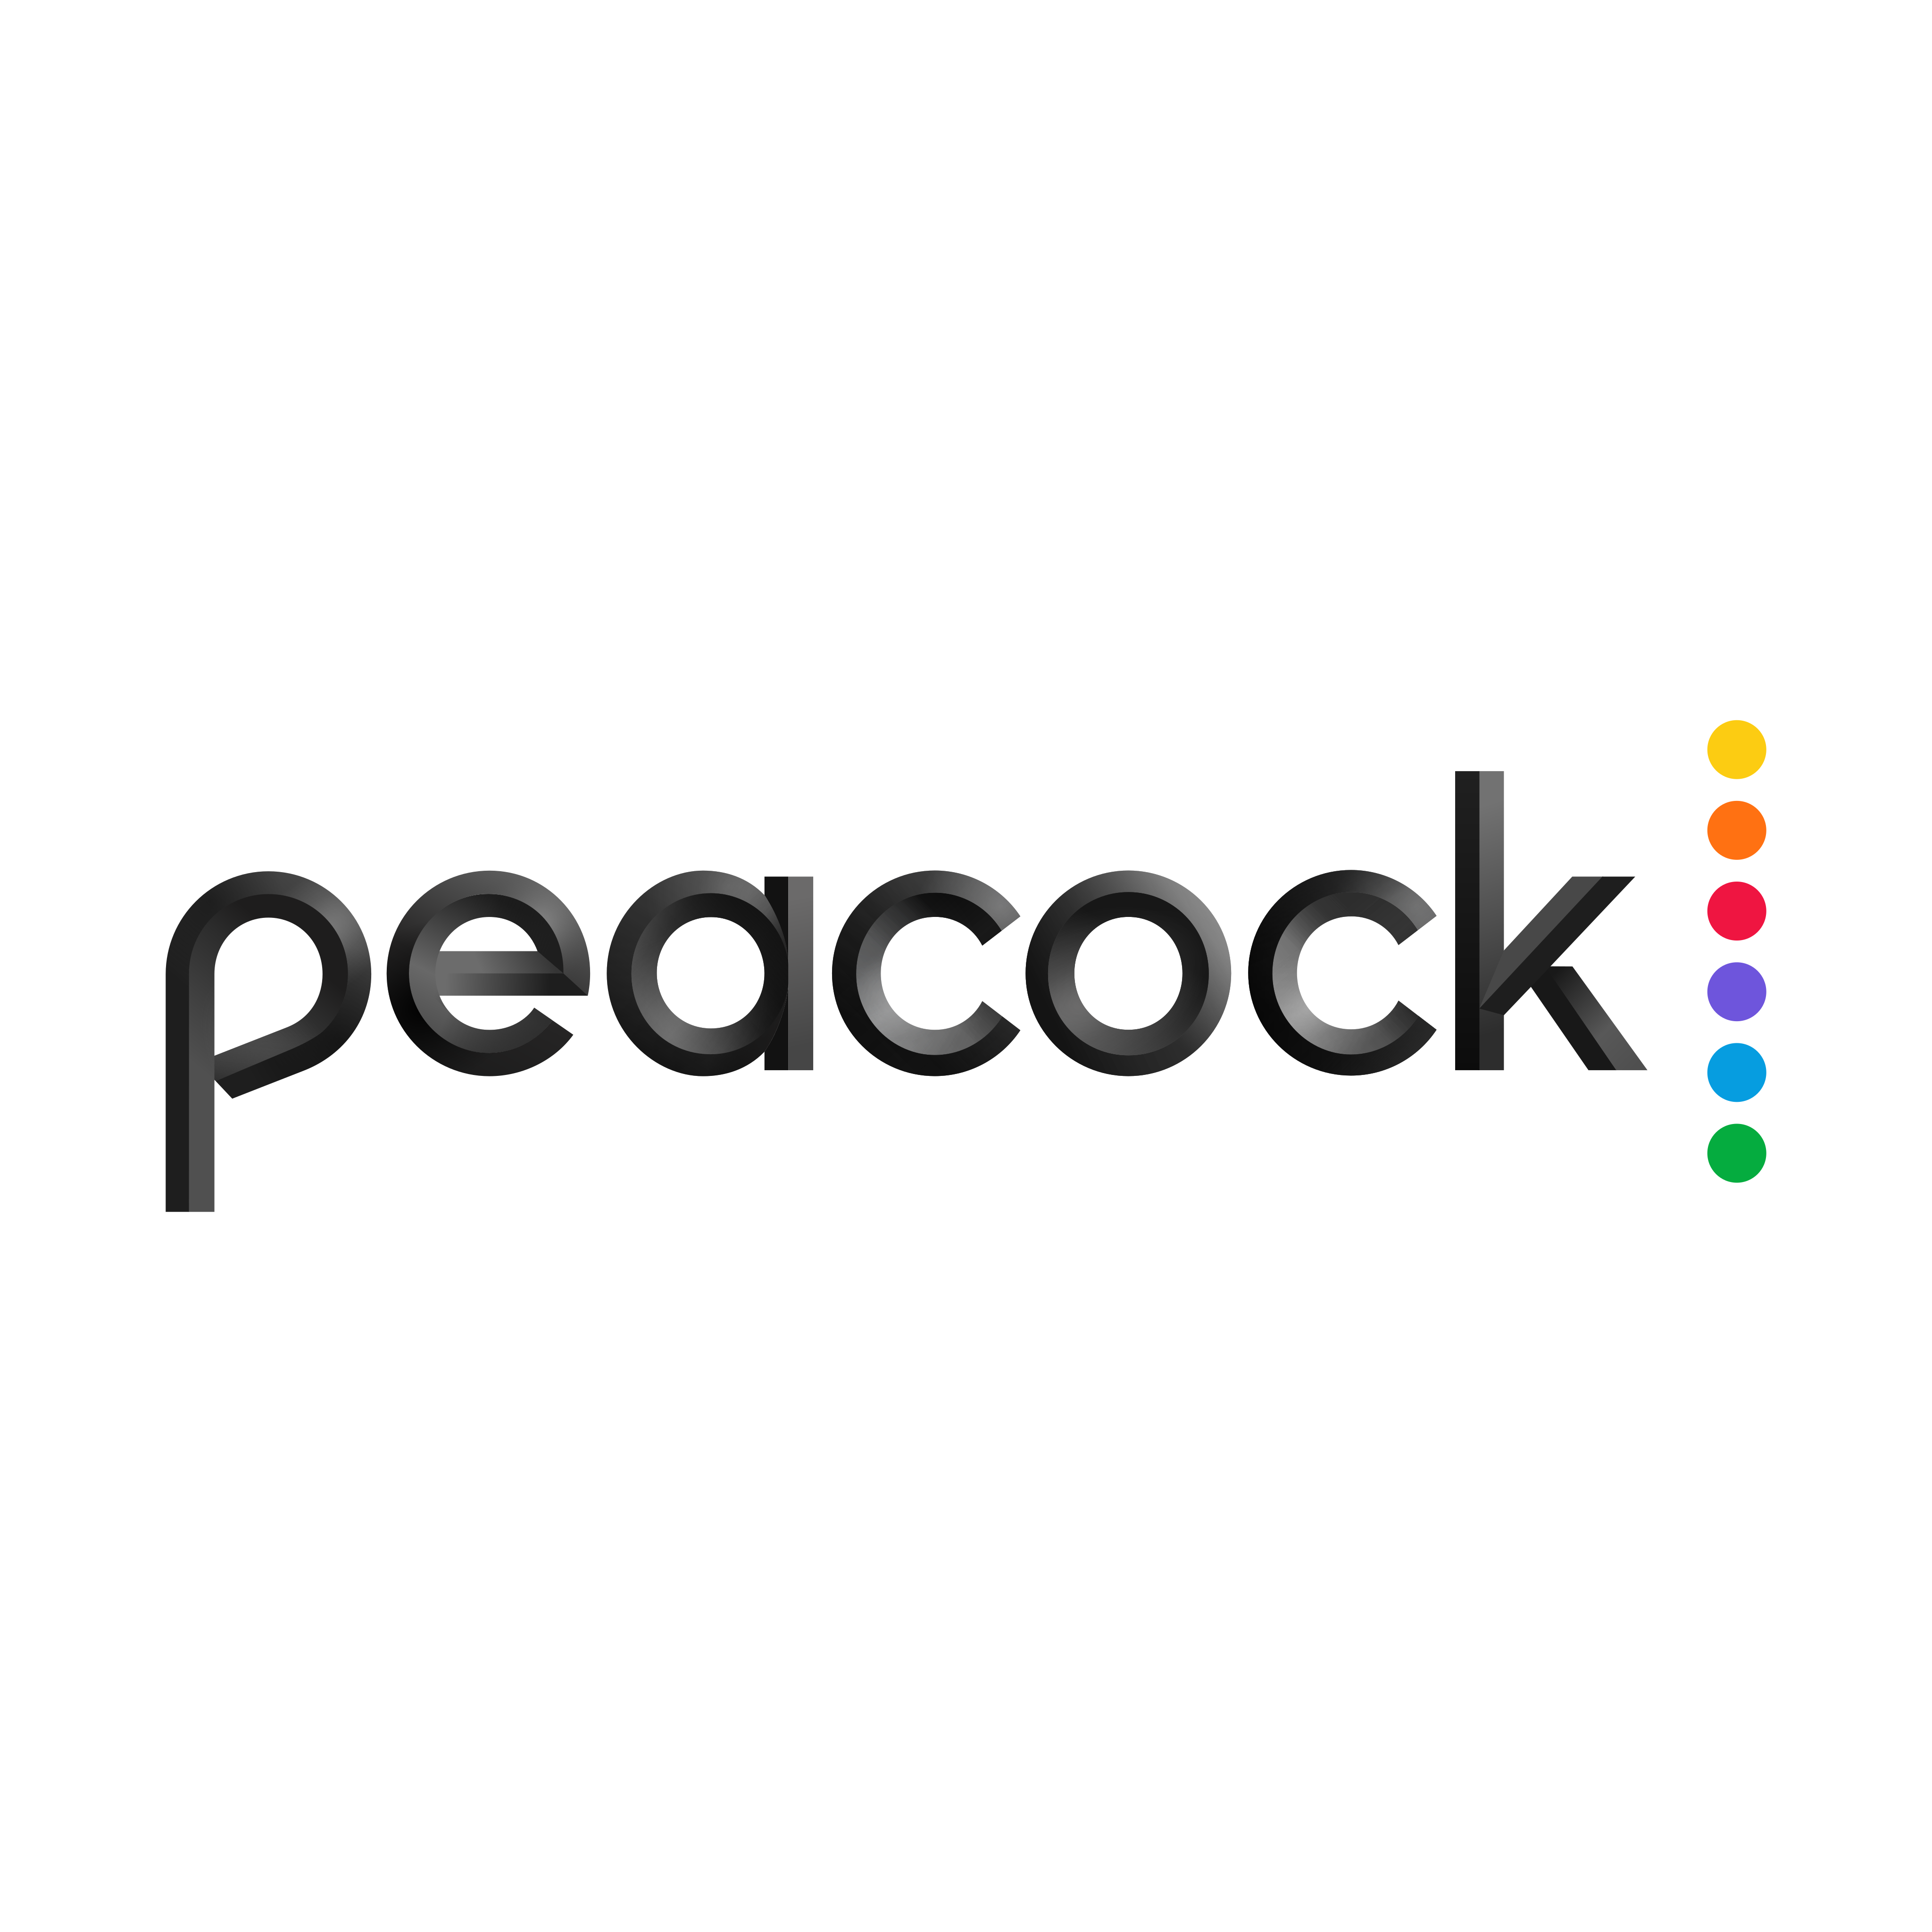 peacock logo 0 - Peacock Logo